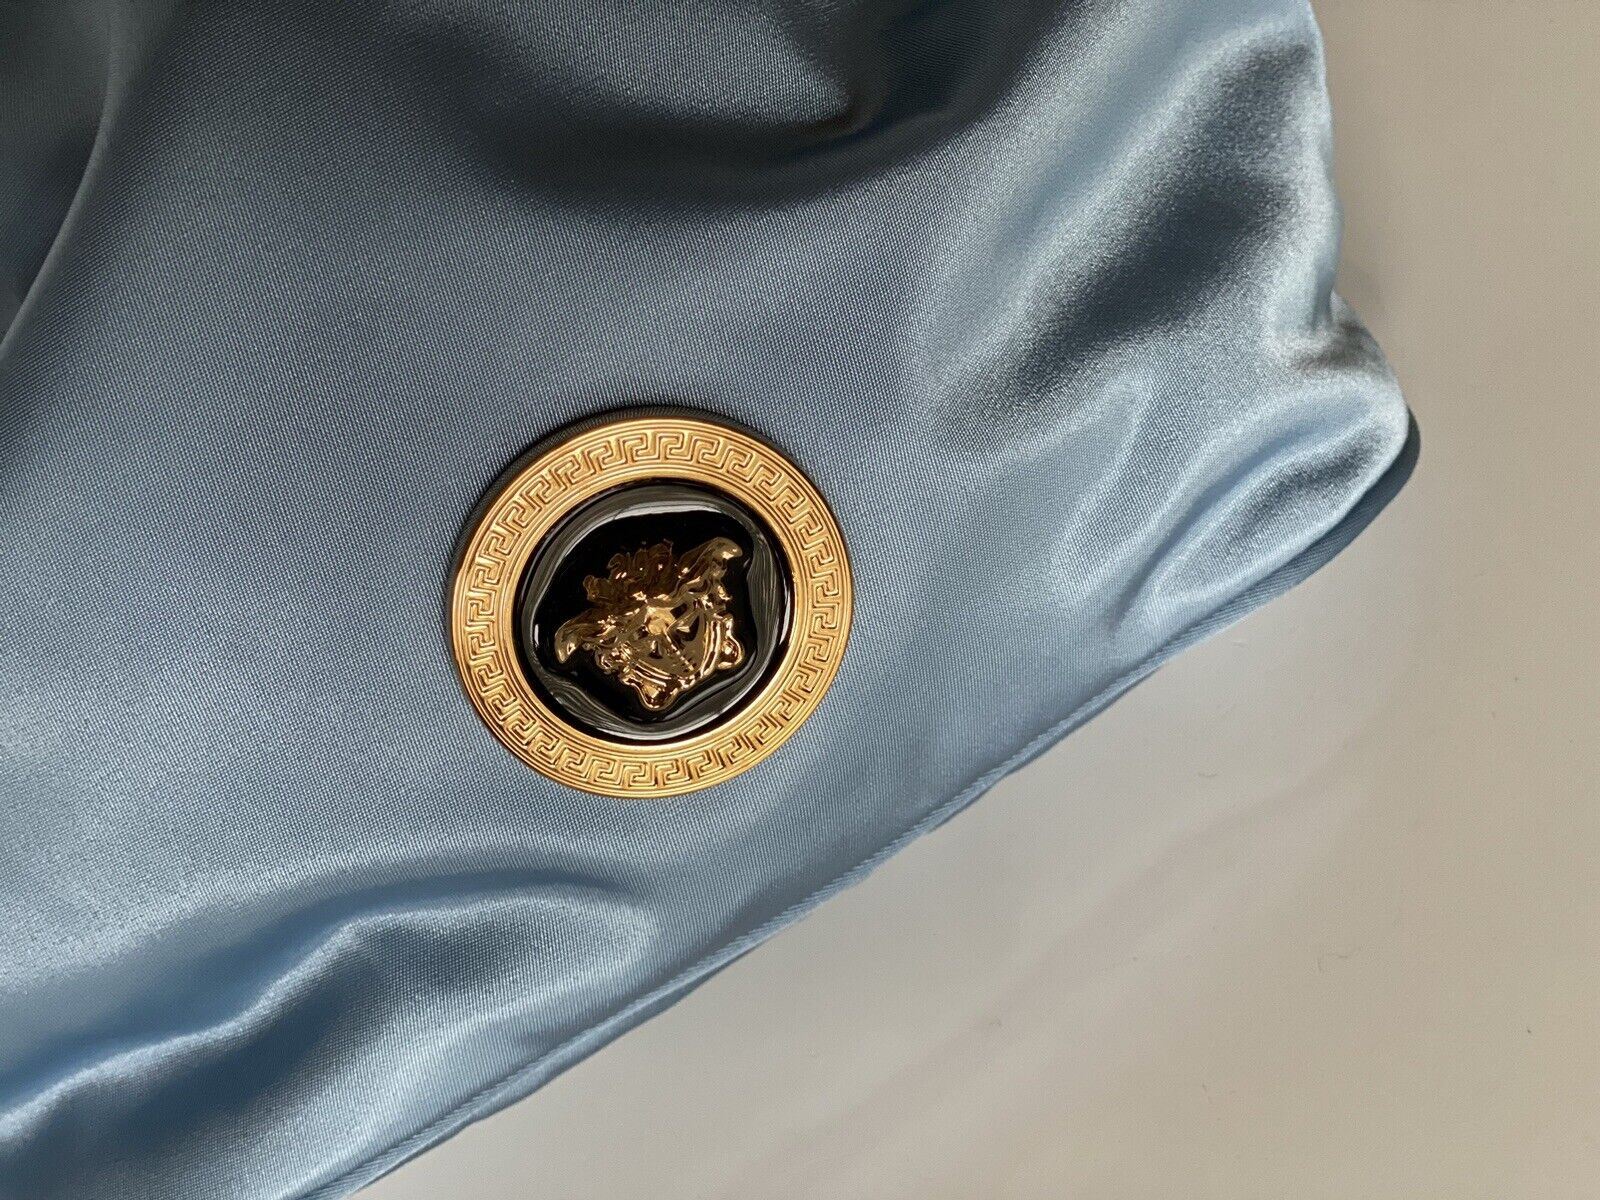 Neu mit Etikett: Versace Mini-Rucksack aus Nylon/Leder in Kornblumenblau, Italien 1002875 1A02155 